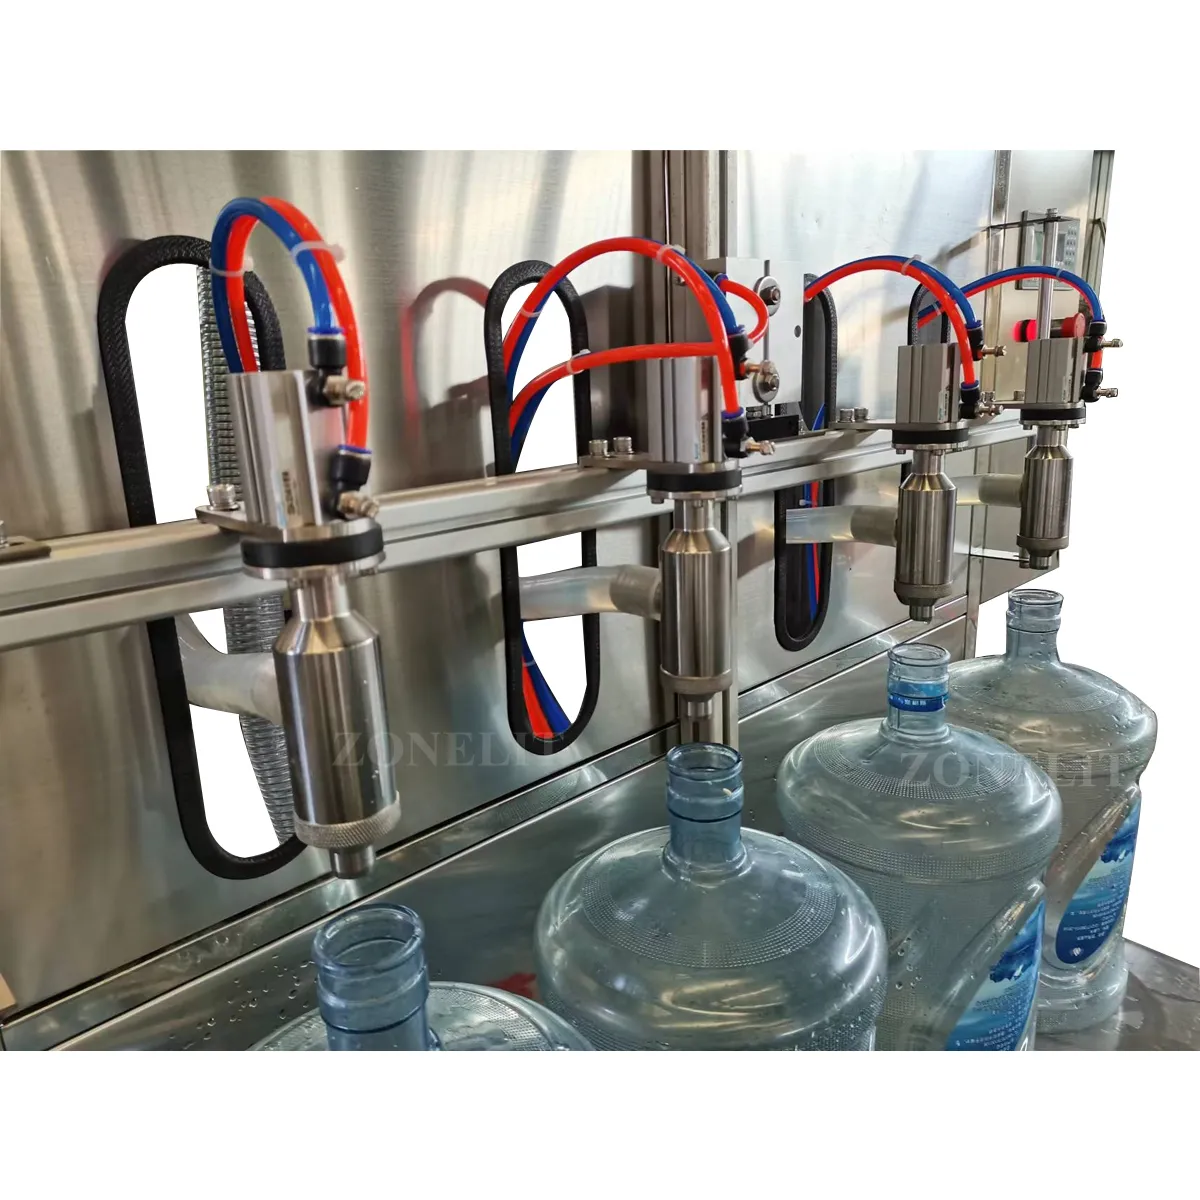 Mesin pengisi air 5 galon untuk kaca meja, mesin pengisi air semi otomatis dengan kontrol digital